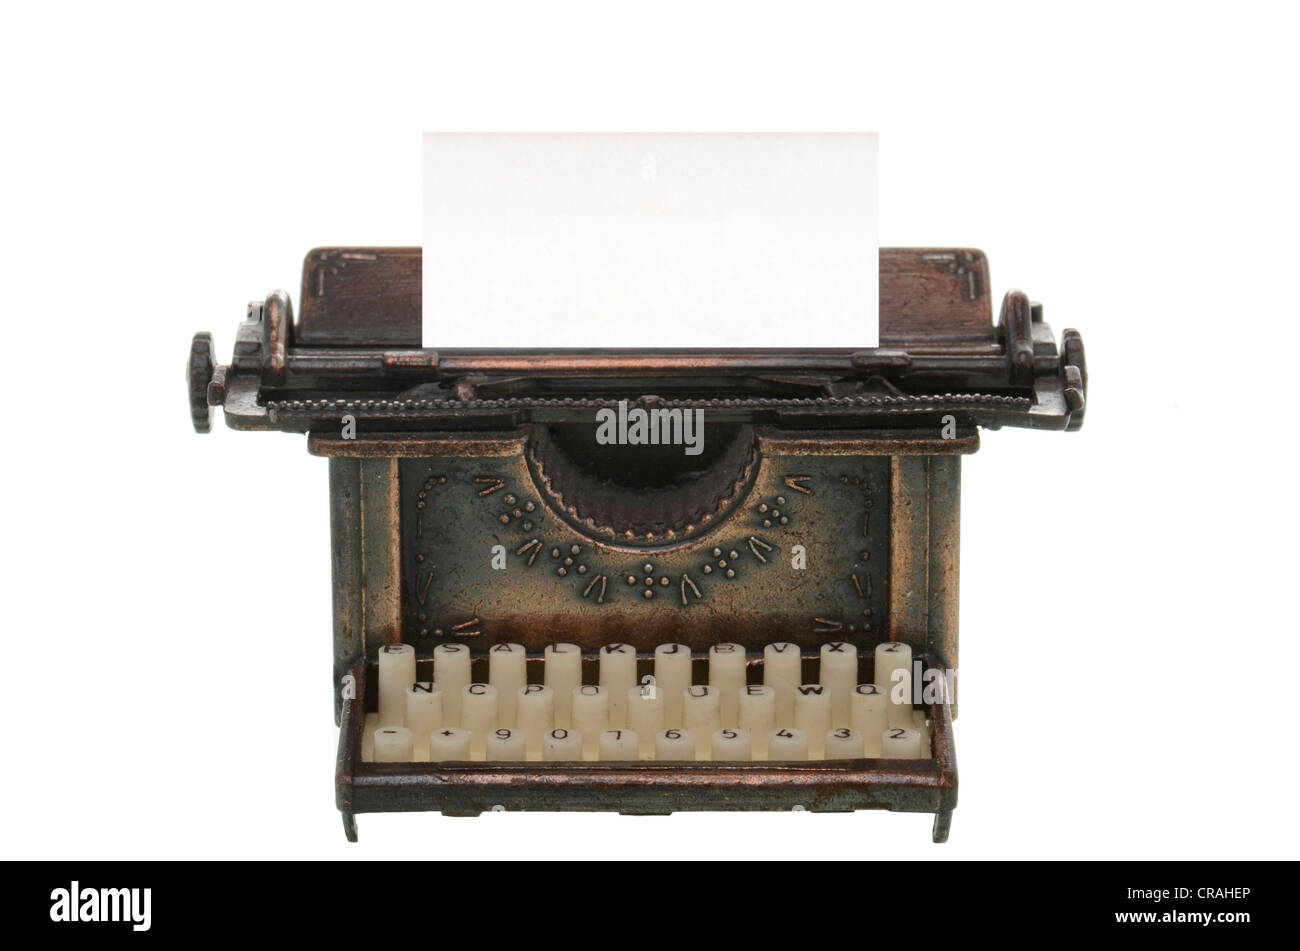 Vieille machine à écrire avec une feuille vierge Banque D'Images